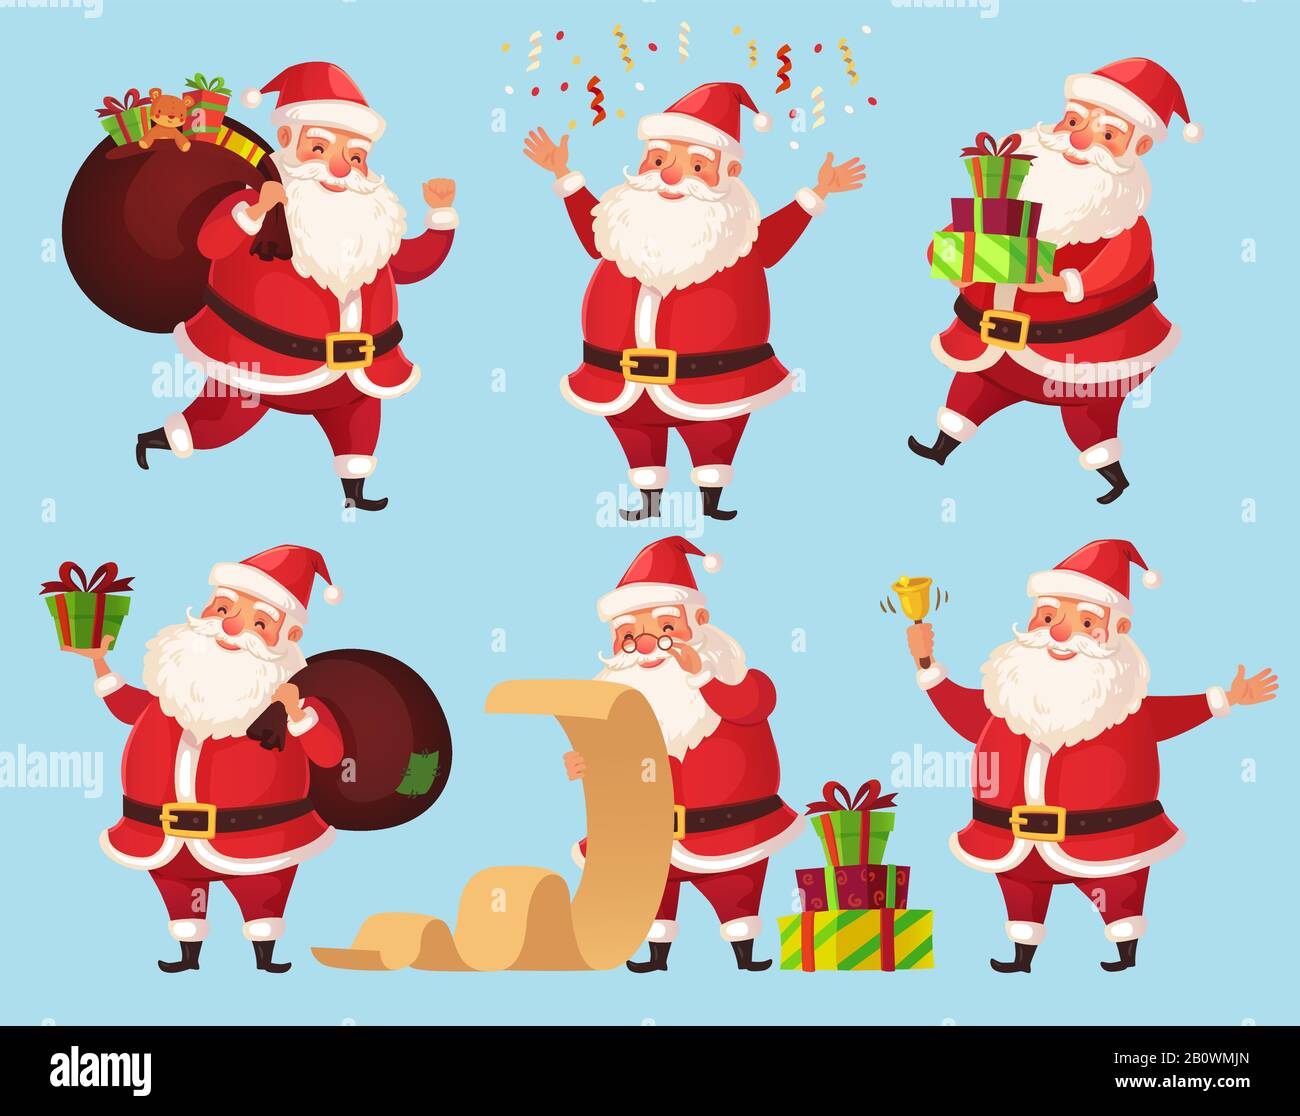 Weihnachtsmann Cartoon-Charakter. Lustiger Weihnachtsmann mit Weihnachtsgeschenken, Vektorgrafiken für Winterurlaube Stock Vektor